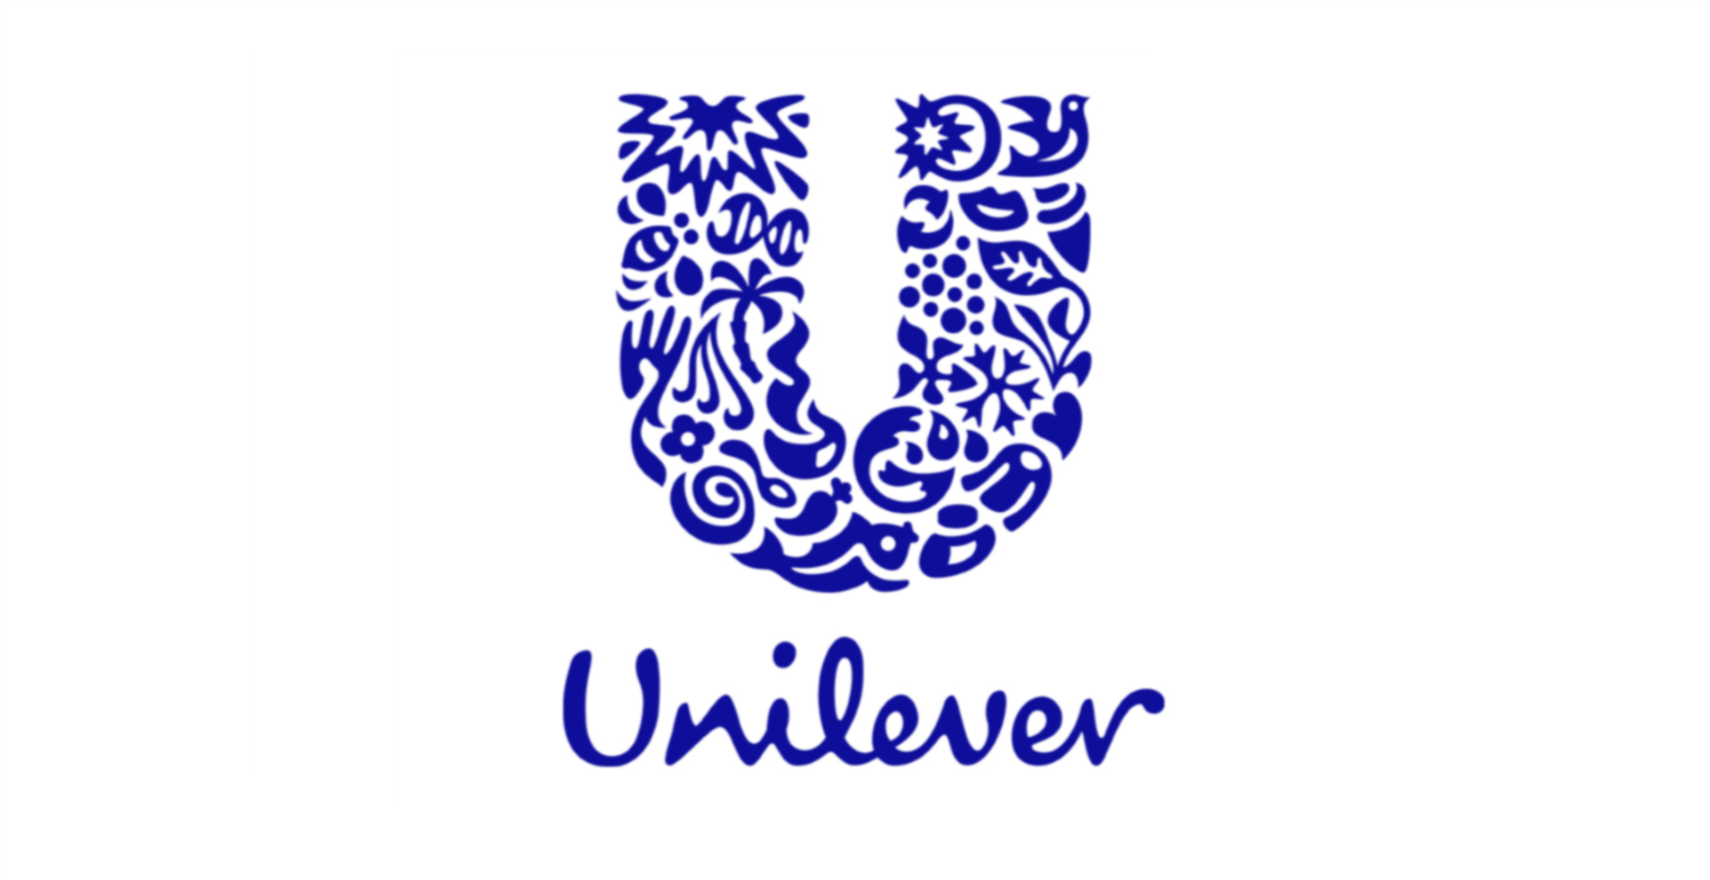 大きなUの字の下に筆記体で”Unilever”と書かれたユニリーバのロゴ